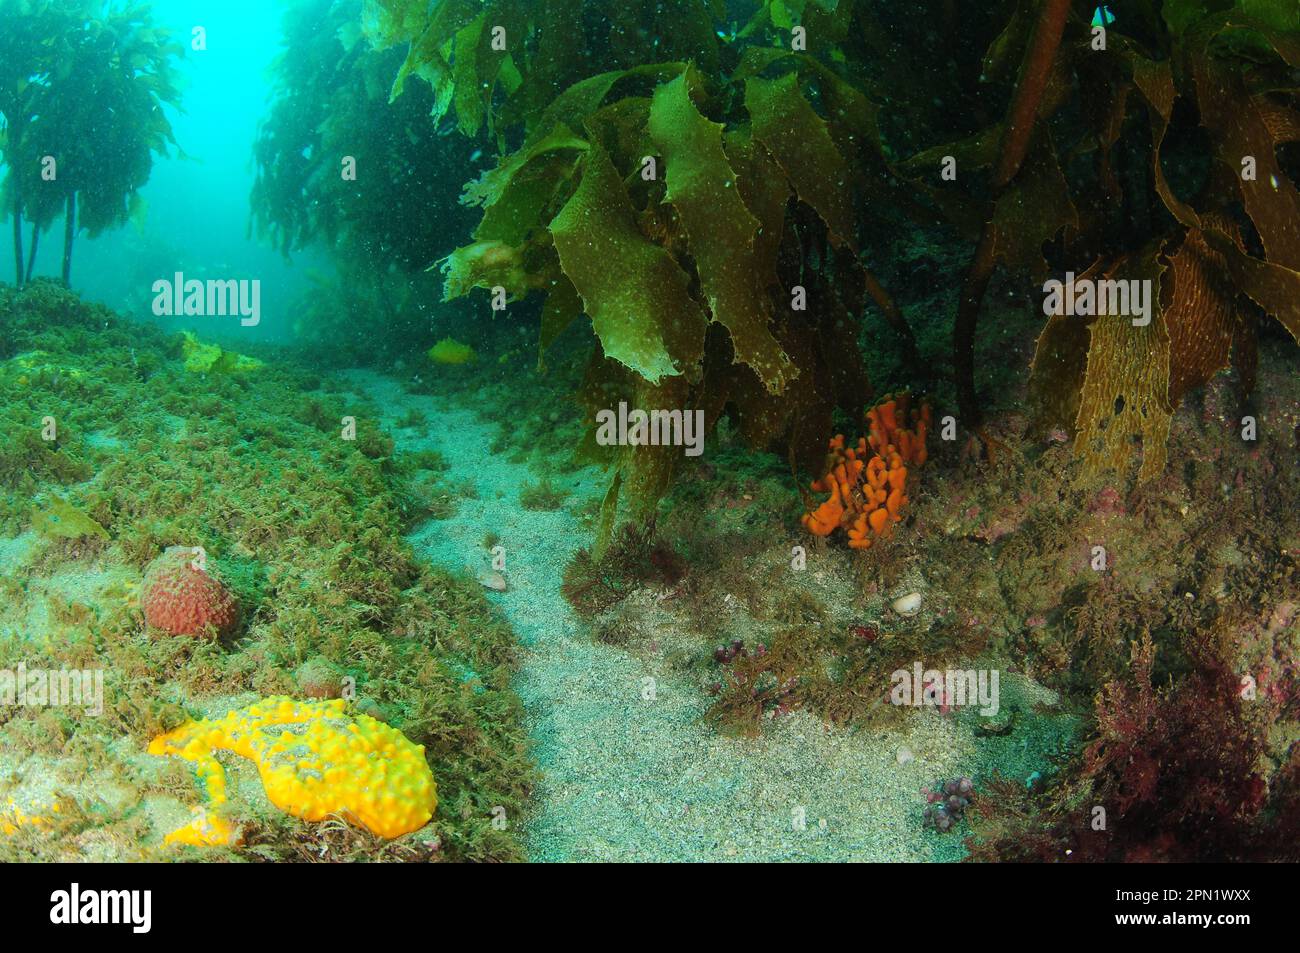 Esponjas de varios colores y formas crecen bajo el dosel del bosque de algas. Ubicación: Leigh Nueva Zelanda Foto de stock